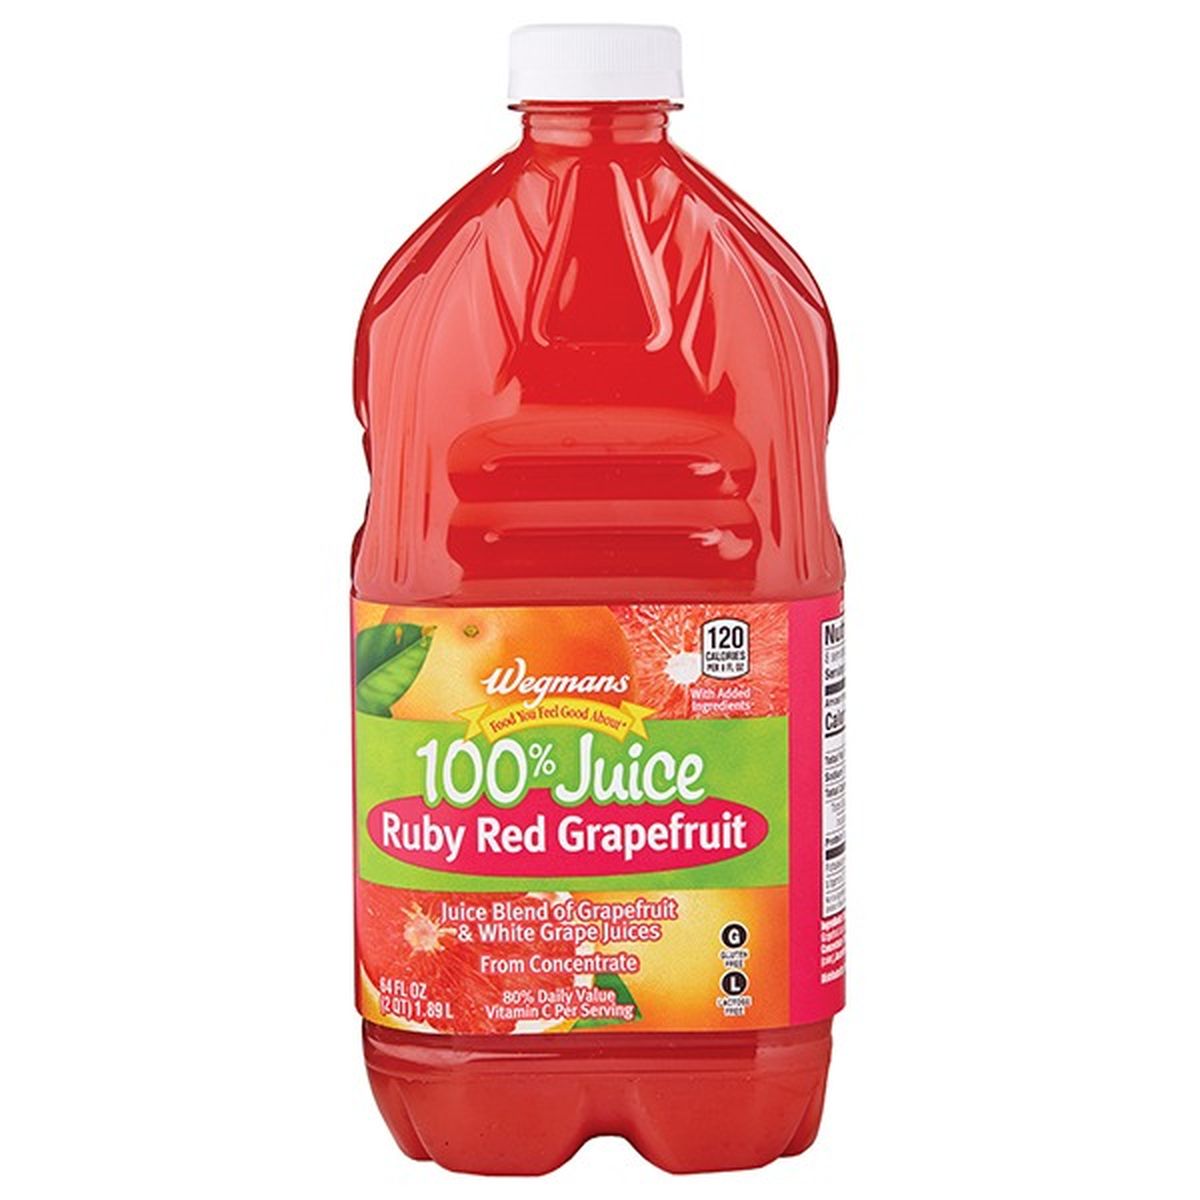 Calories in Wegmans Juice, 100%, Ruby Red Grapefruit